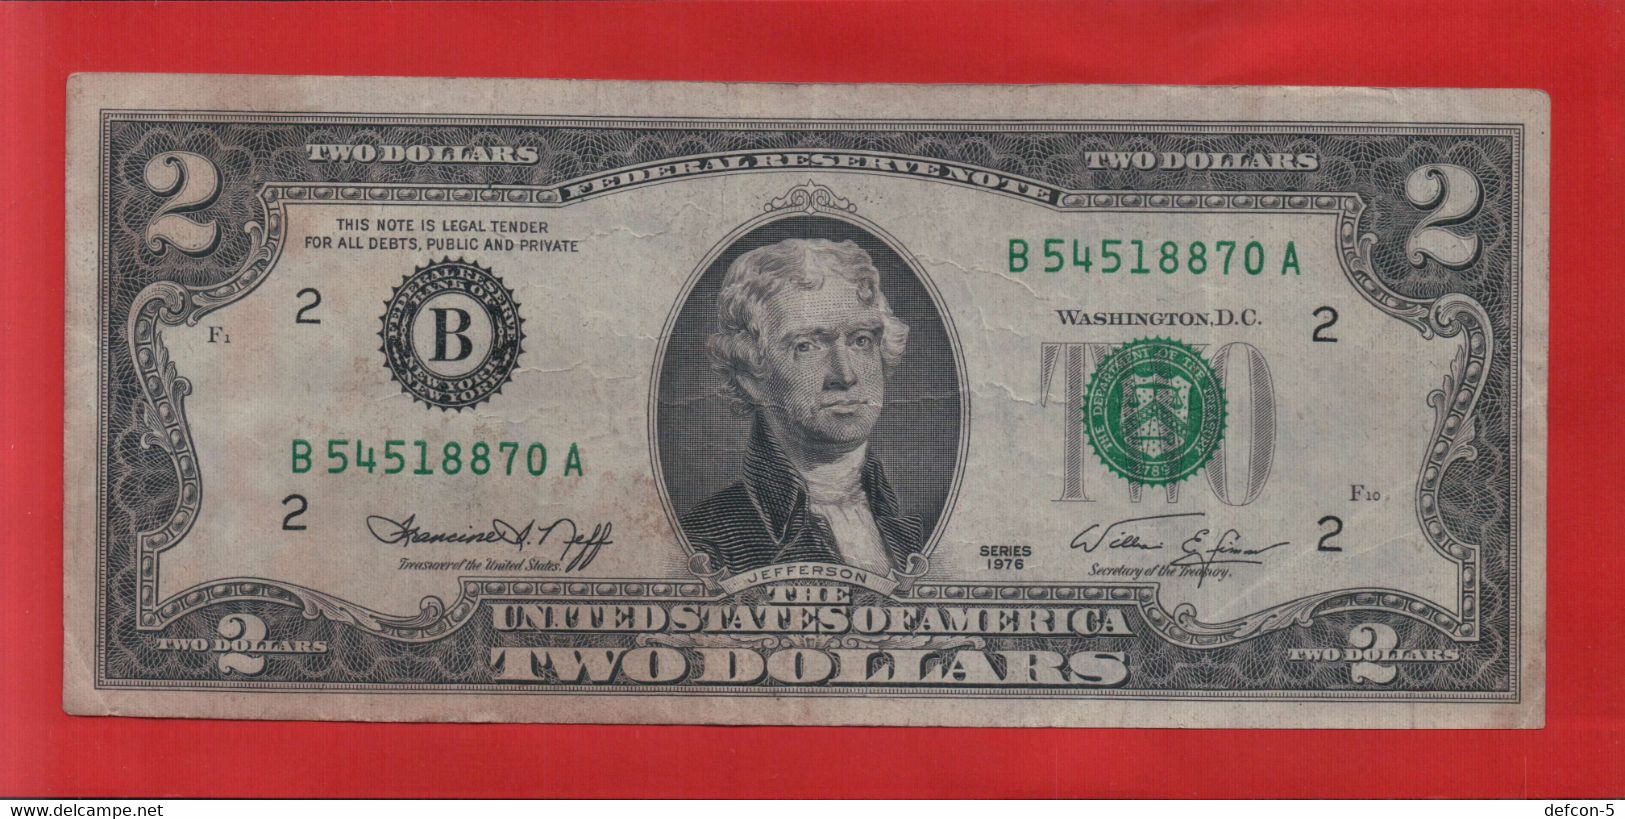 Rarität ! 2 US-Dollar [1976] > B 54518870 A < {$018-002} - Divisa Nacional